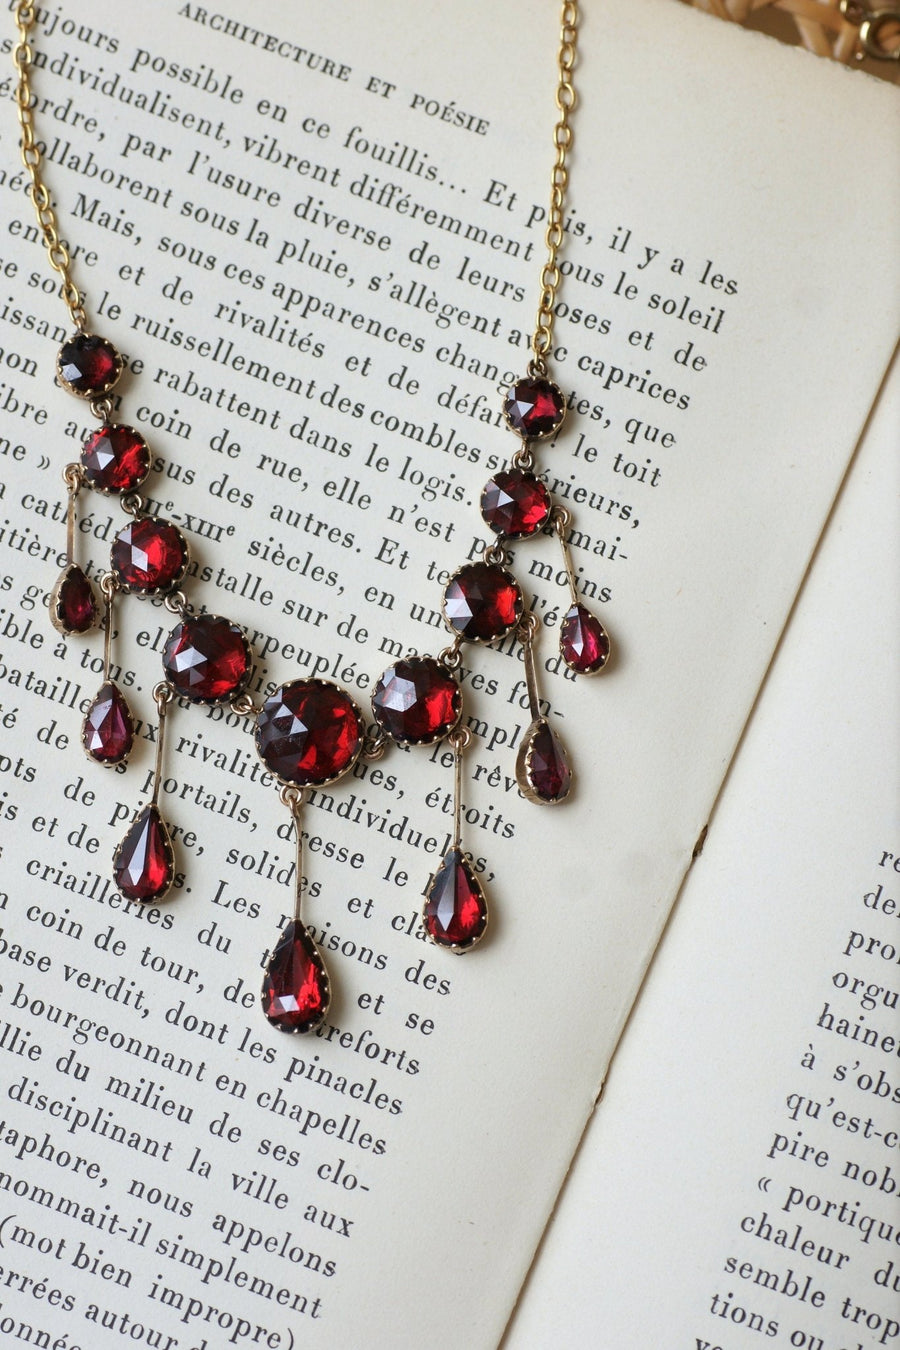 Garnet drapery necklace - Penelope Gallery